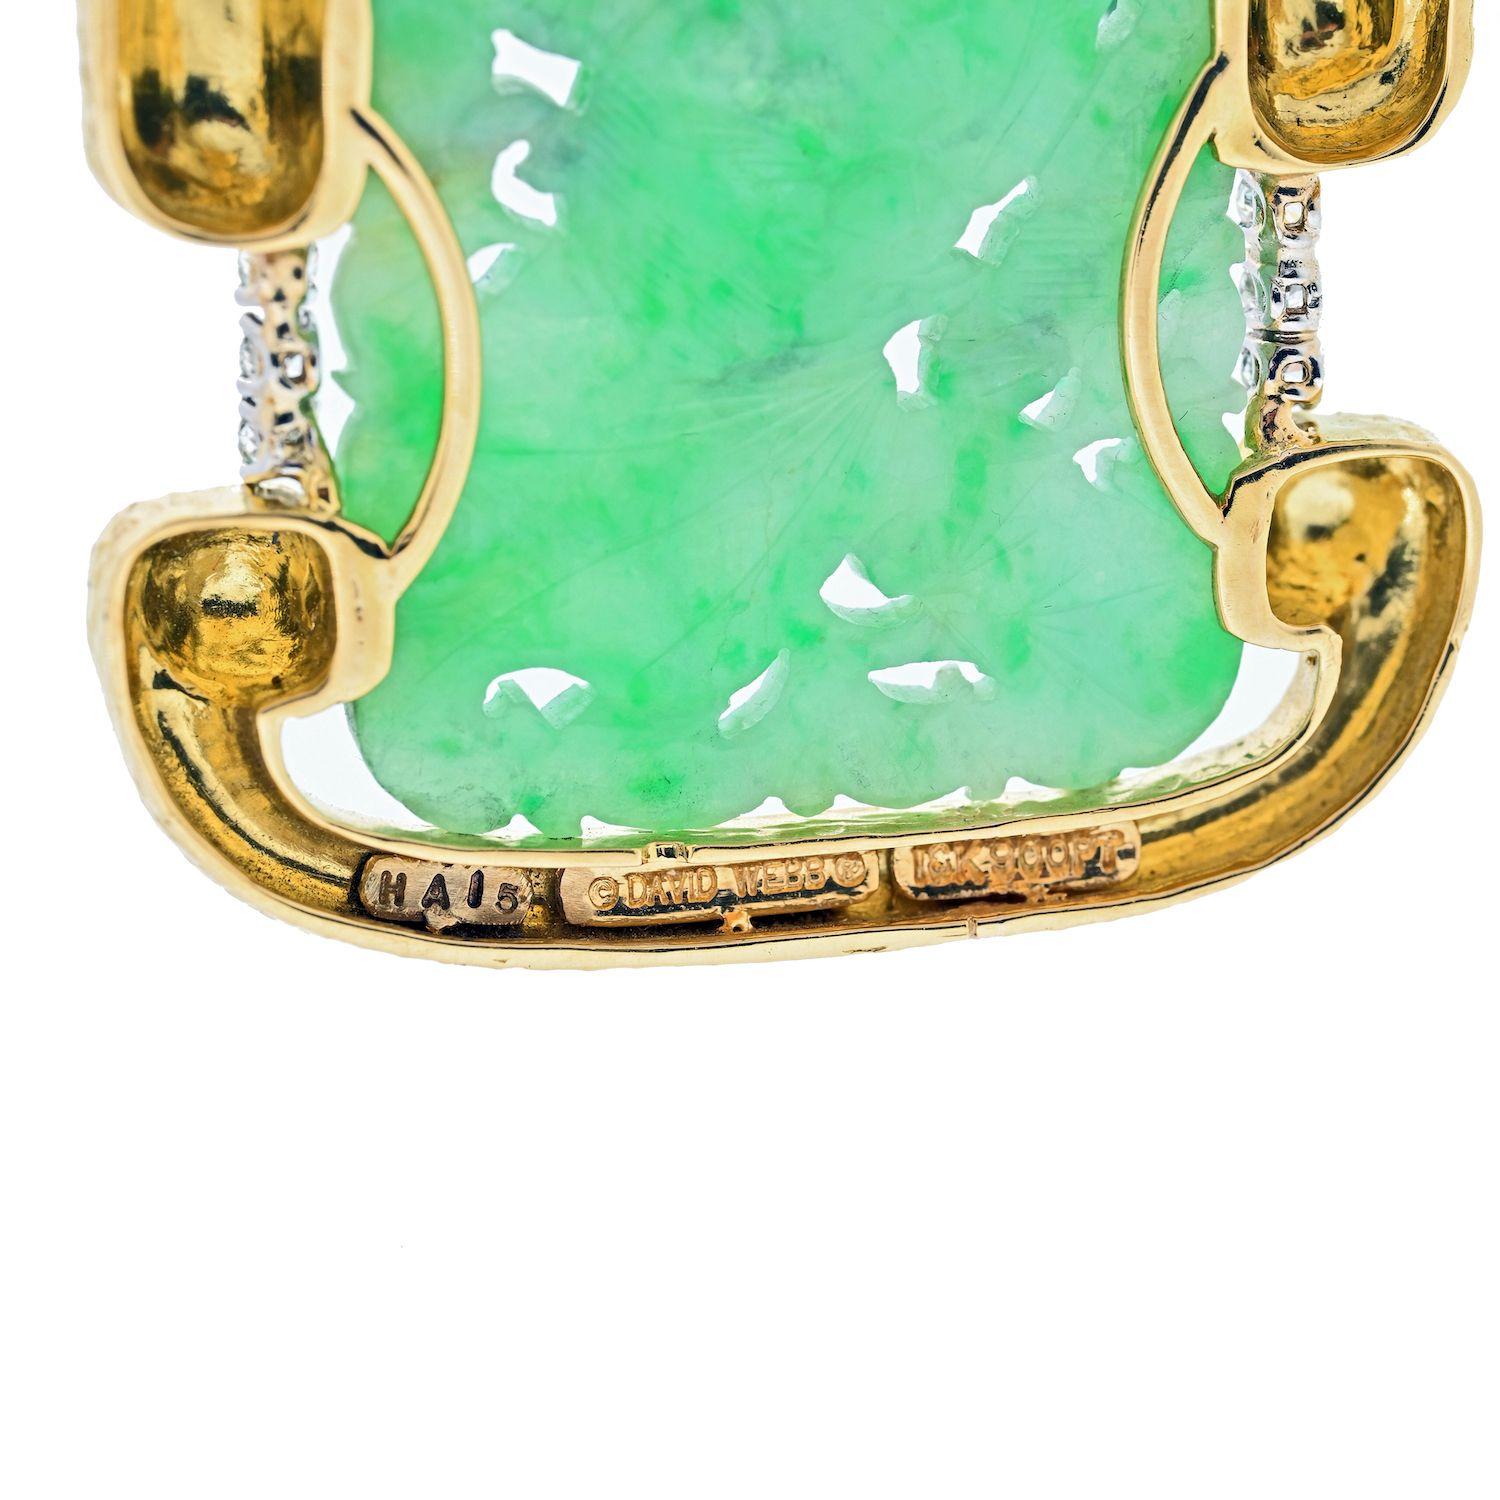 Il s'agit d'un magnifique collier de jade à plusieurs brins de David Webb, composé d'un médaillon sculpté proéminent au centre, encadré d'or articulé. Des maillons ouverts en or martelé de style ancien, situés légèrement au-dessus du médaillon de